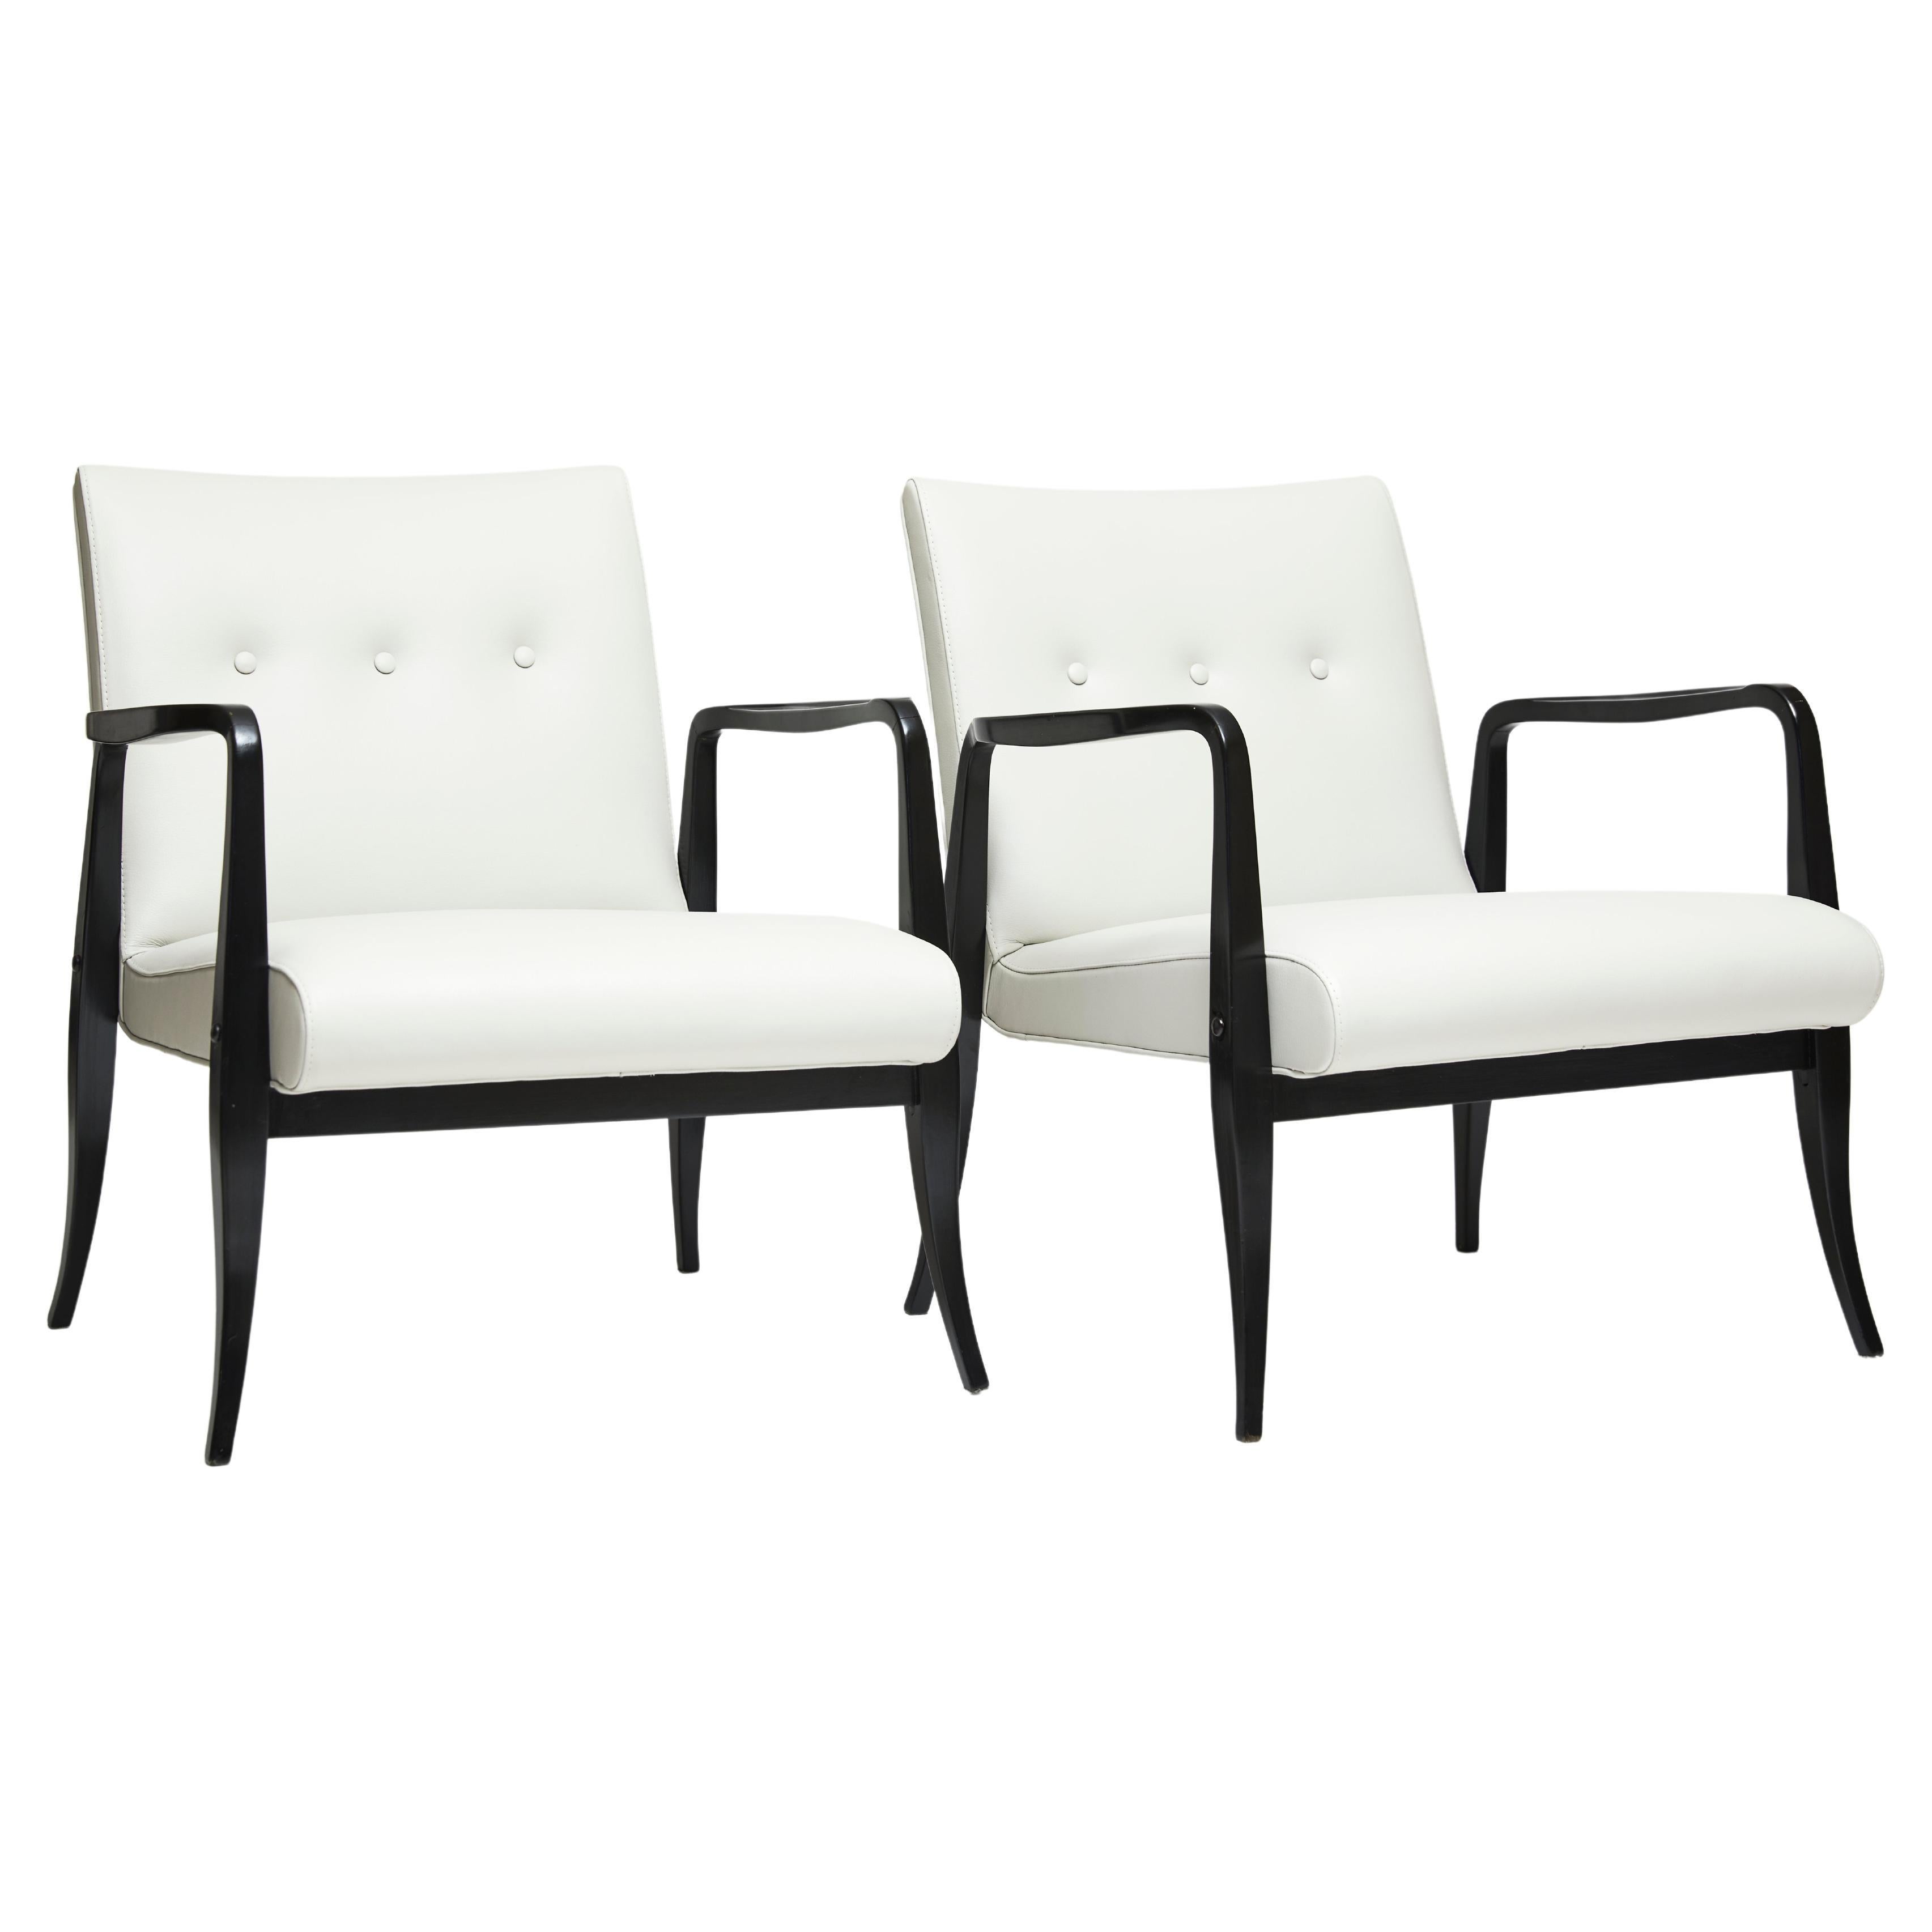 Dieses schöne Paar moderner brasilianischer Sessel ist ab sofort erhältlich. Es besteht aus ebonisiertem Pau Marfim-Hartholz und weißem Leder im Buttone-Stil. 

Die Struktur besteht aus gebogenen Armen und Füßen und wurde von Joaquim Tenreiro in den